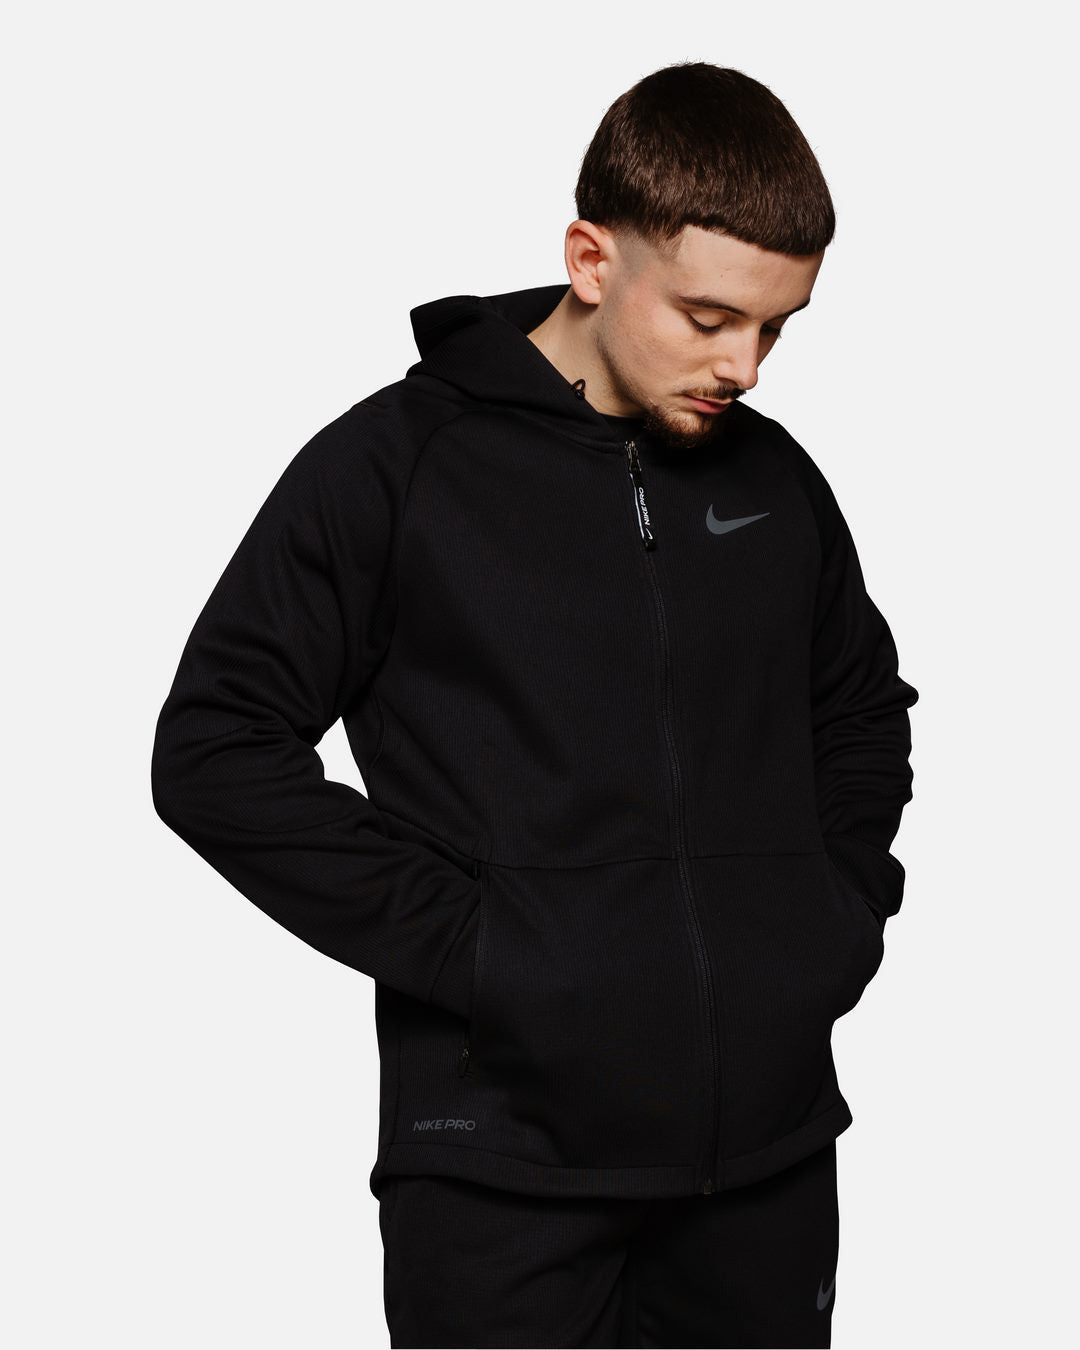 Nike Therma Sphere Hooded Jacket - Black